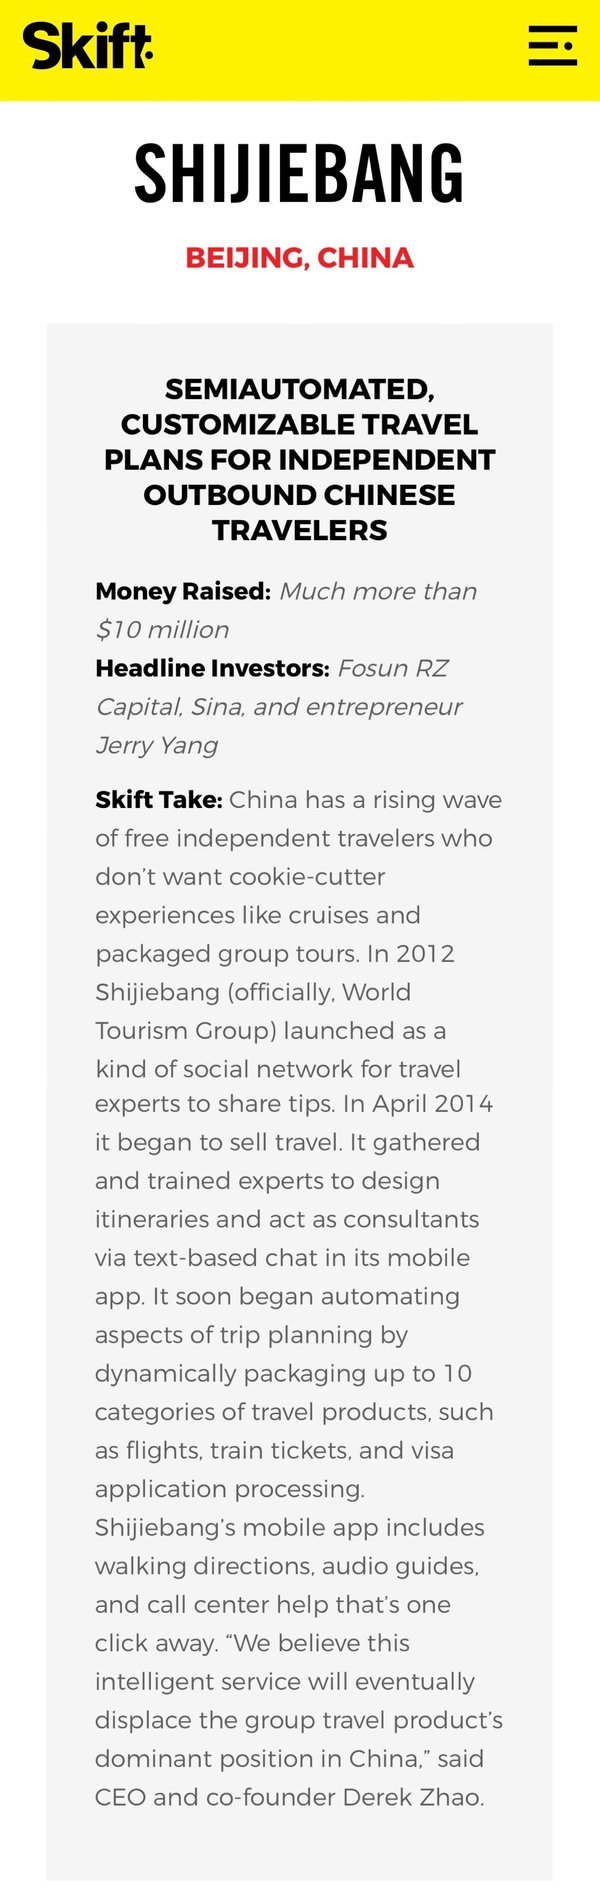 世界邦上榜SKIFT“全球最值得关注的旅游创业公司”